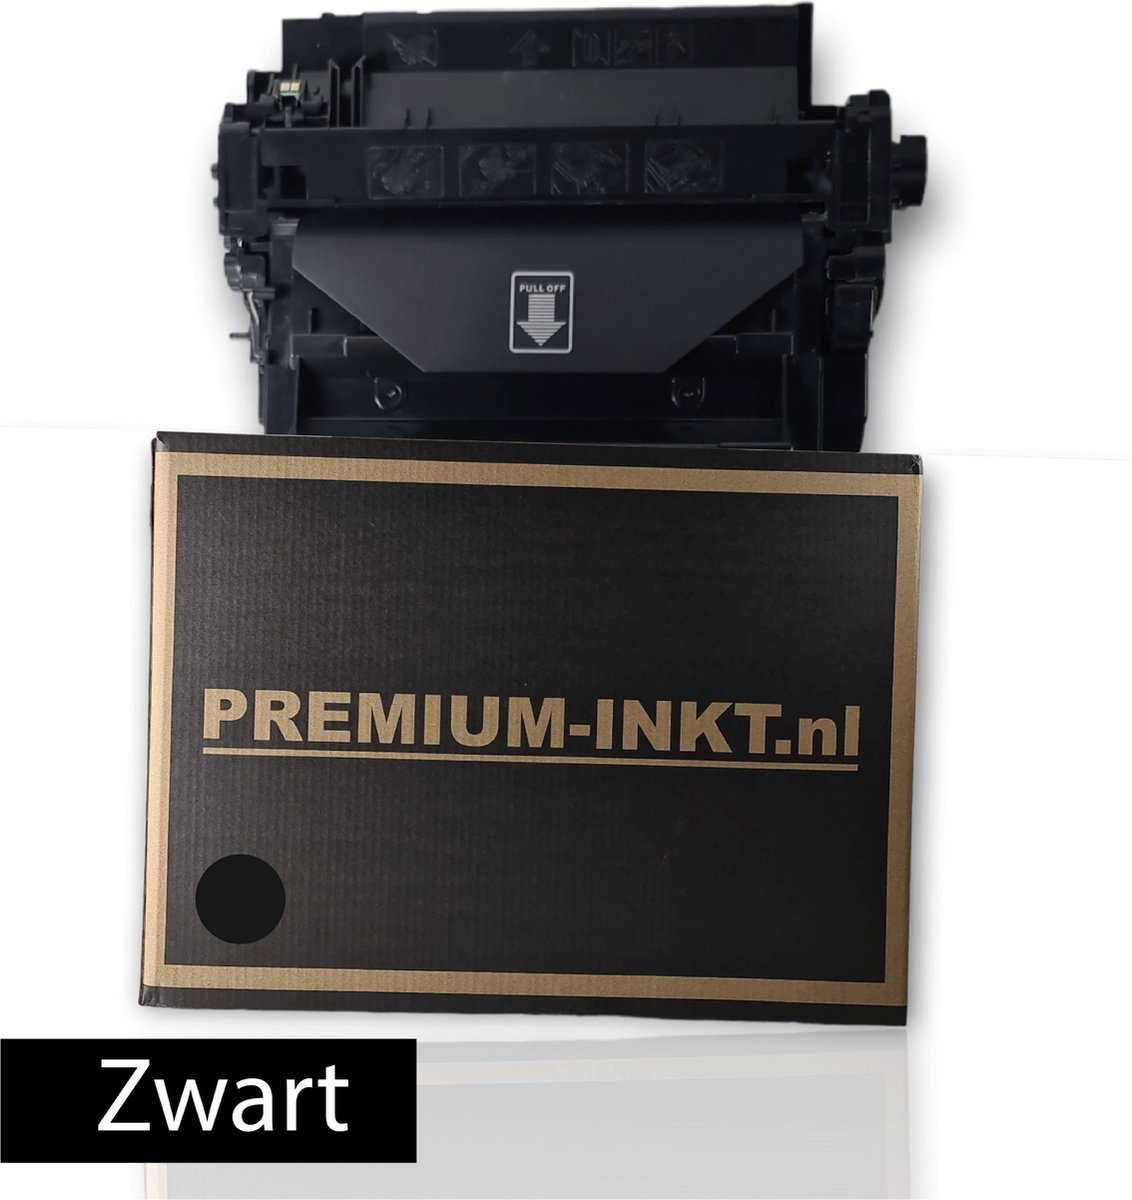 Premium-inkt.nl XXL Geschikt voor HP 55X (CE255X)- HP LaserJet Pro 500 MFP M525f- HP LaserJet Pro 500 MFP M525c -HP LaserJet Pro 500 MFP M525dn - Zwart Toner Met Chip-14.000 Print Paginas ZWART